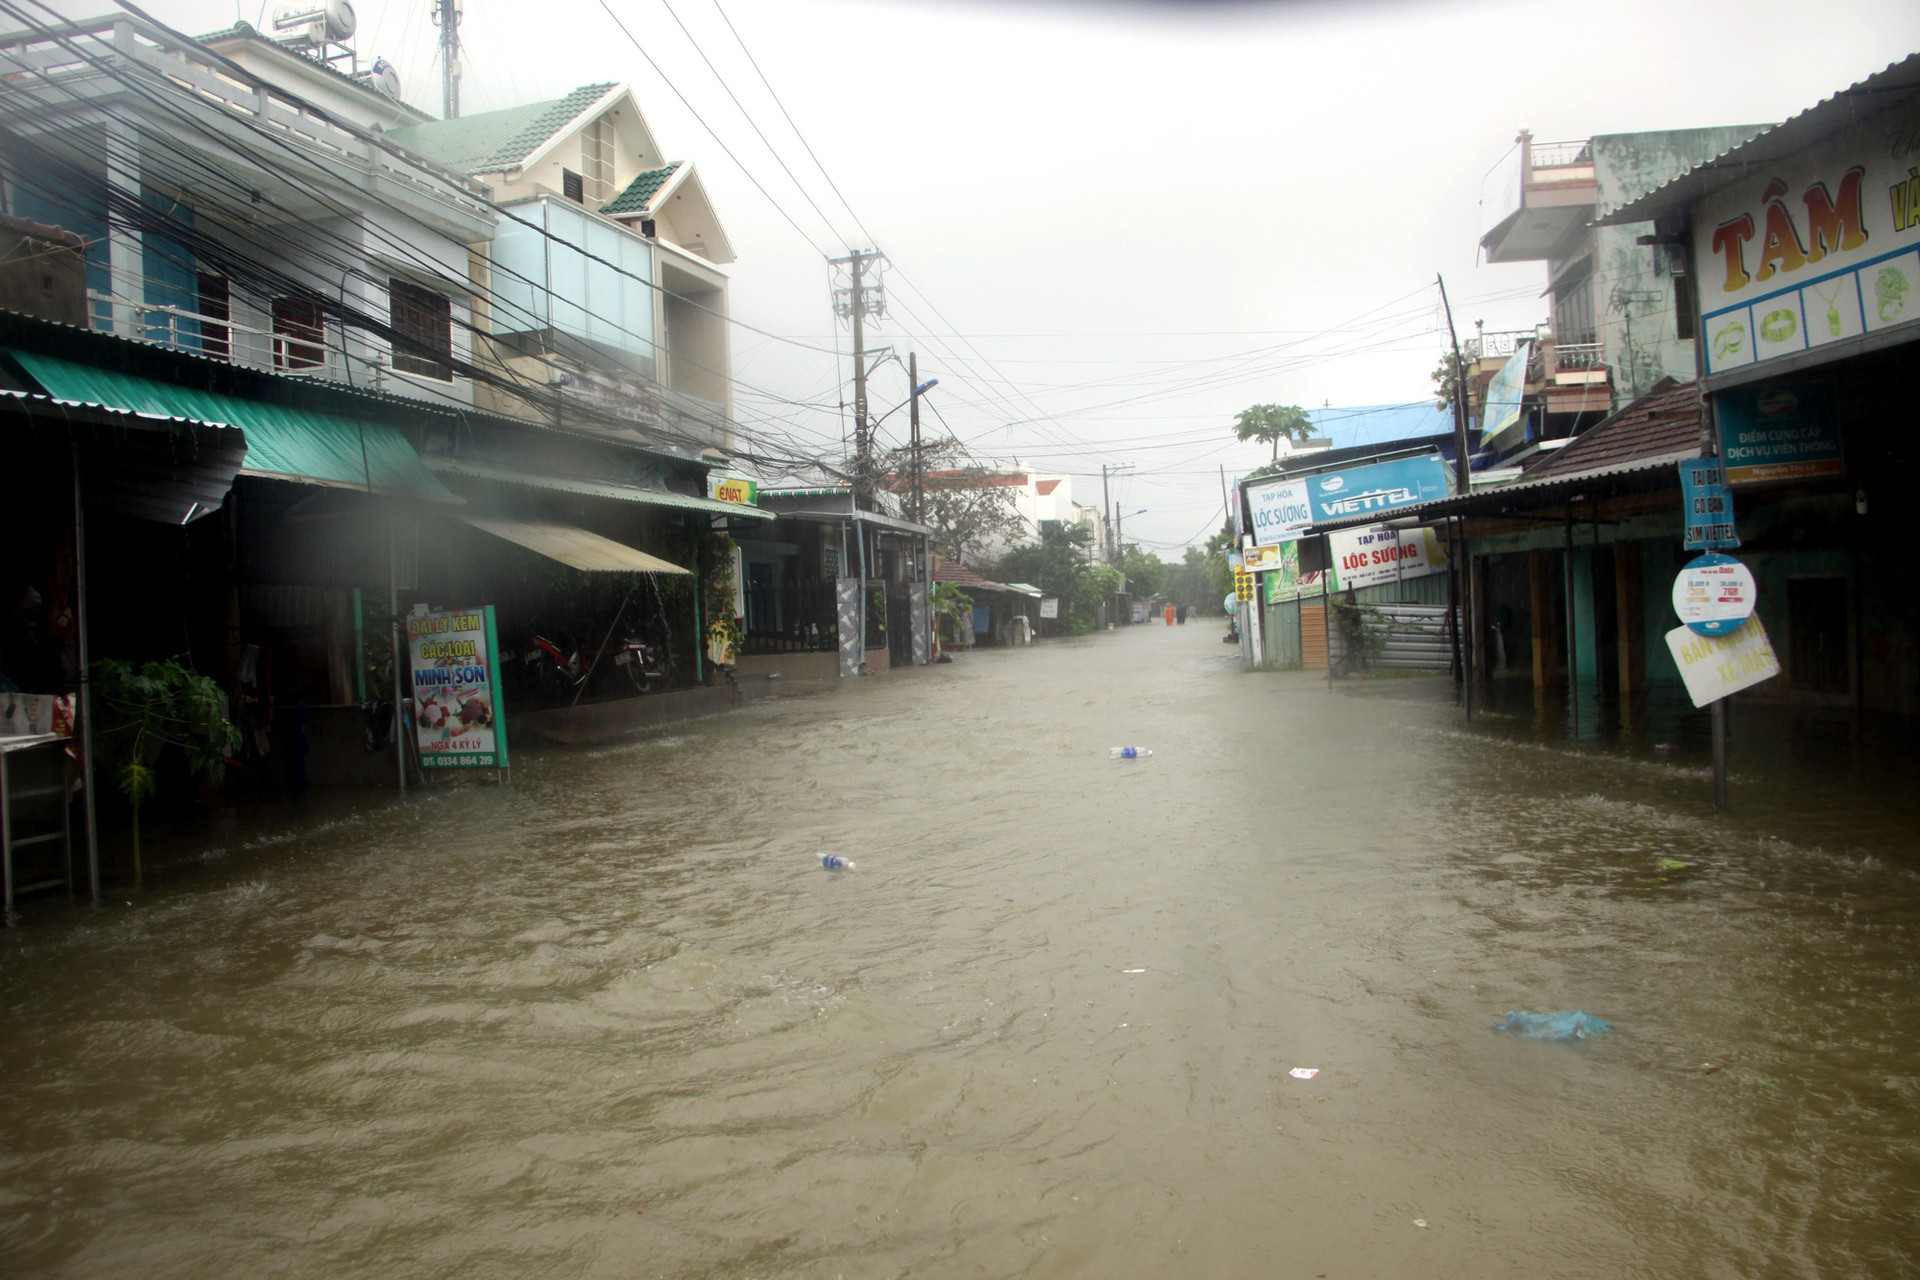 Quảng Nam: Hơn 73 ngôi nhà, nhiều công trình công cộng bị thiệt hại, hư hỏng do mưa lũ - Ảnh 2.